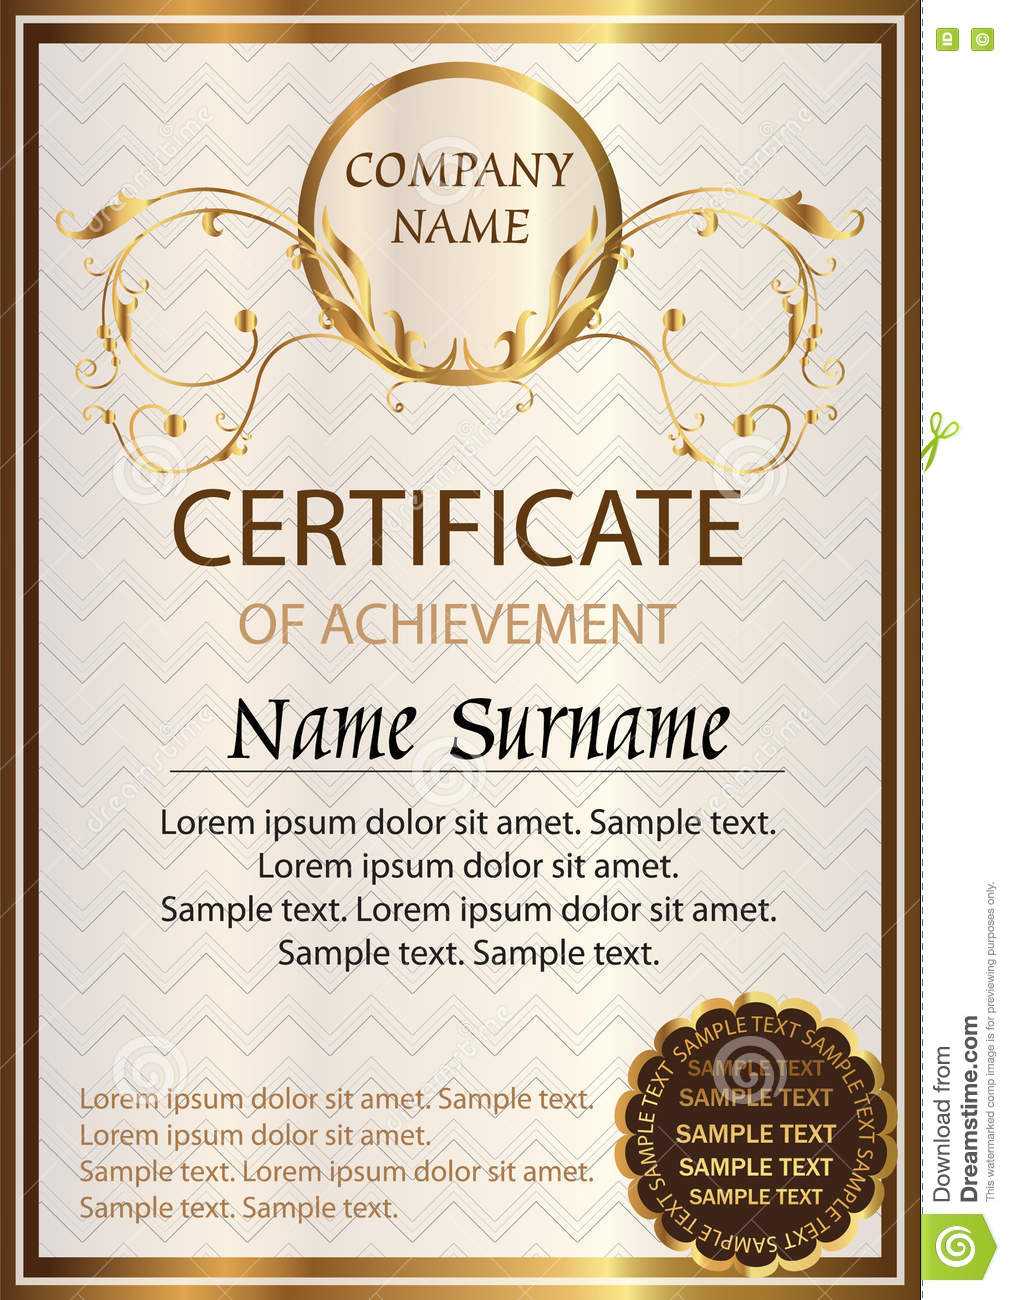 Certificate Or Diploma Template. Award Winner Stock Vector With Winner Certificate Template